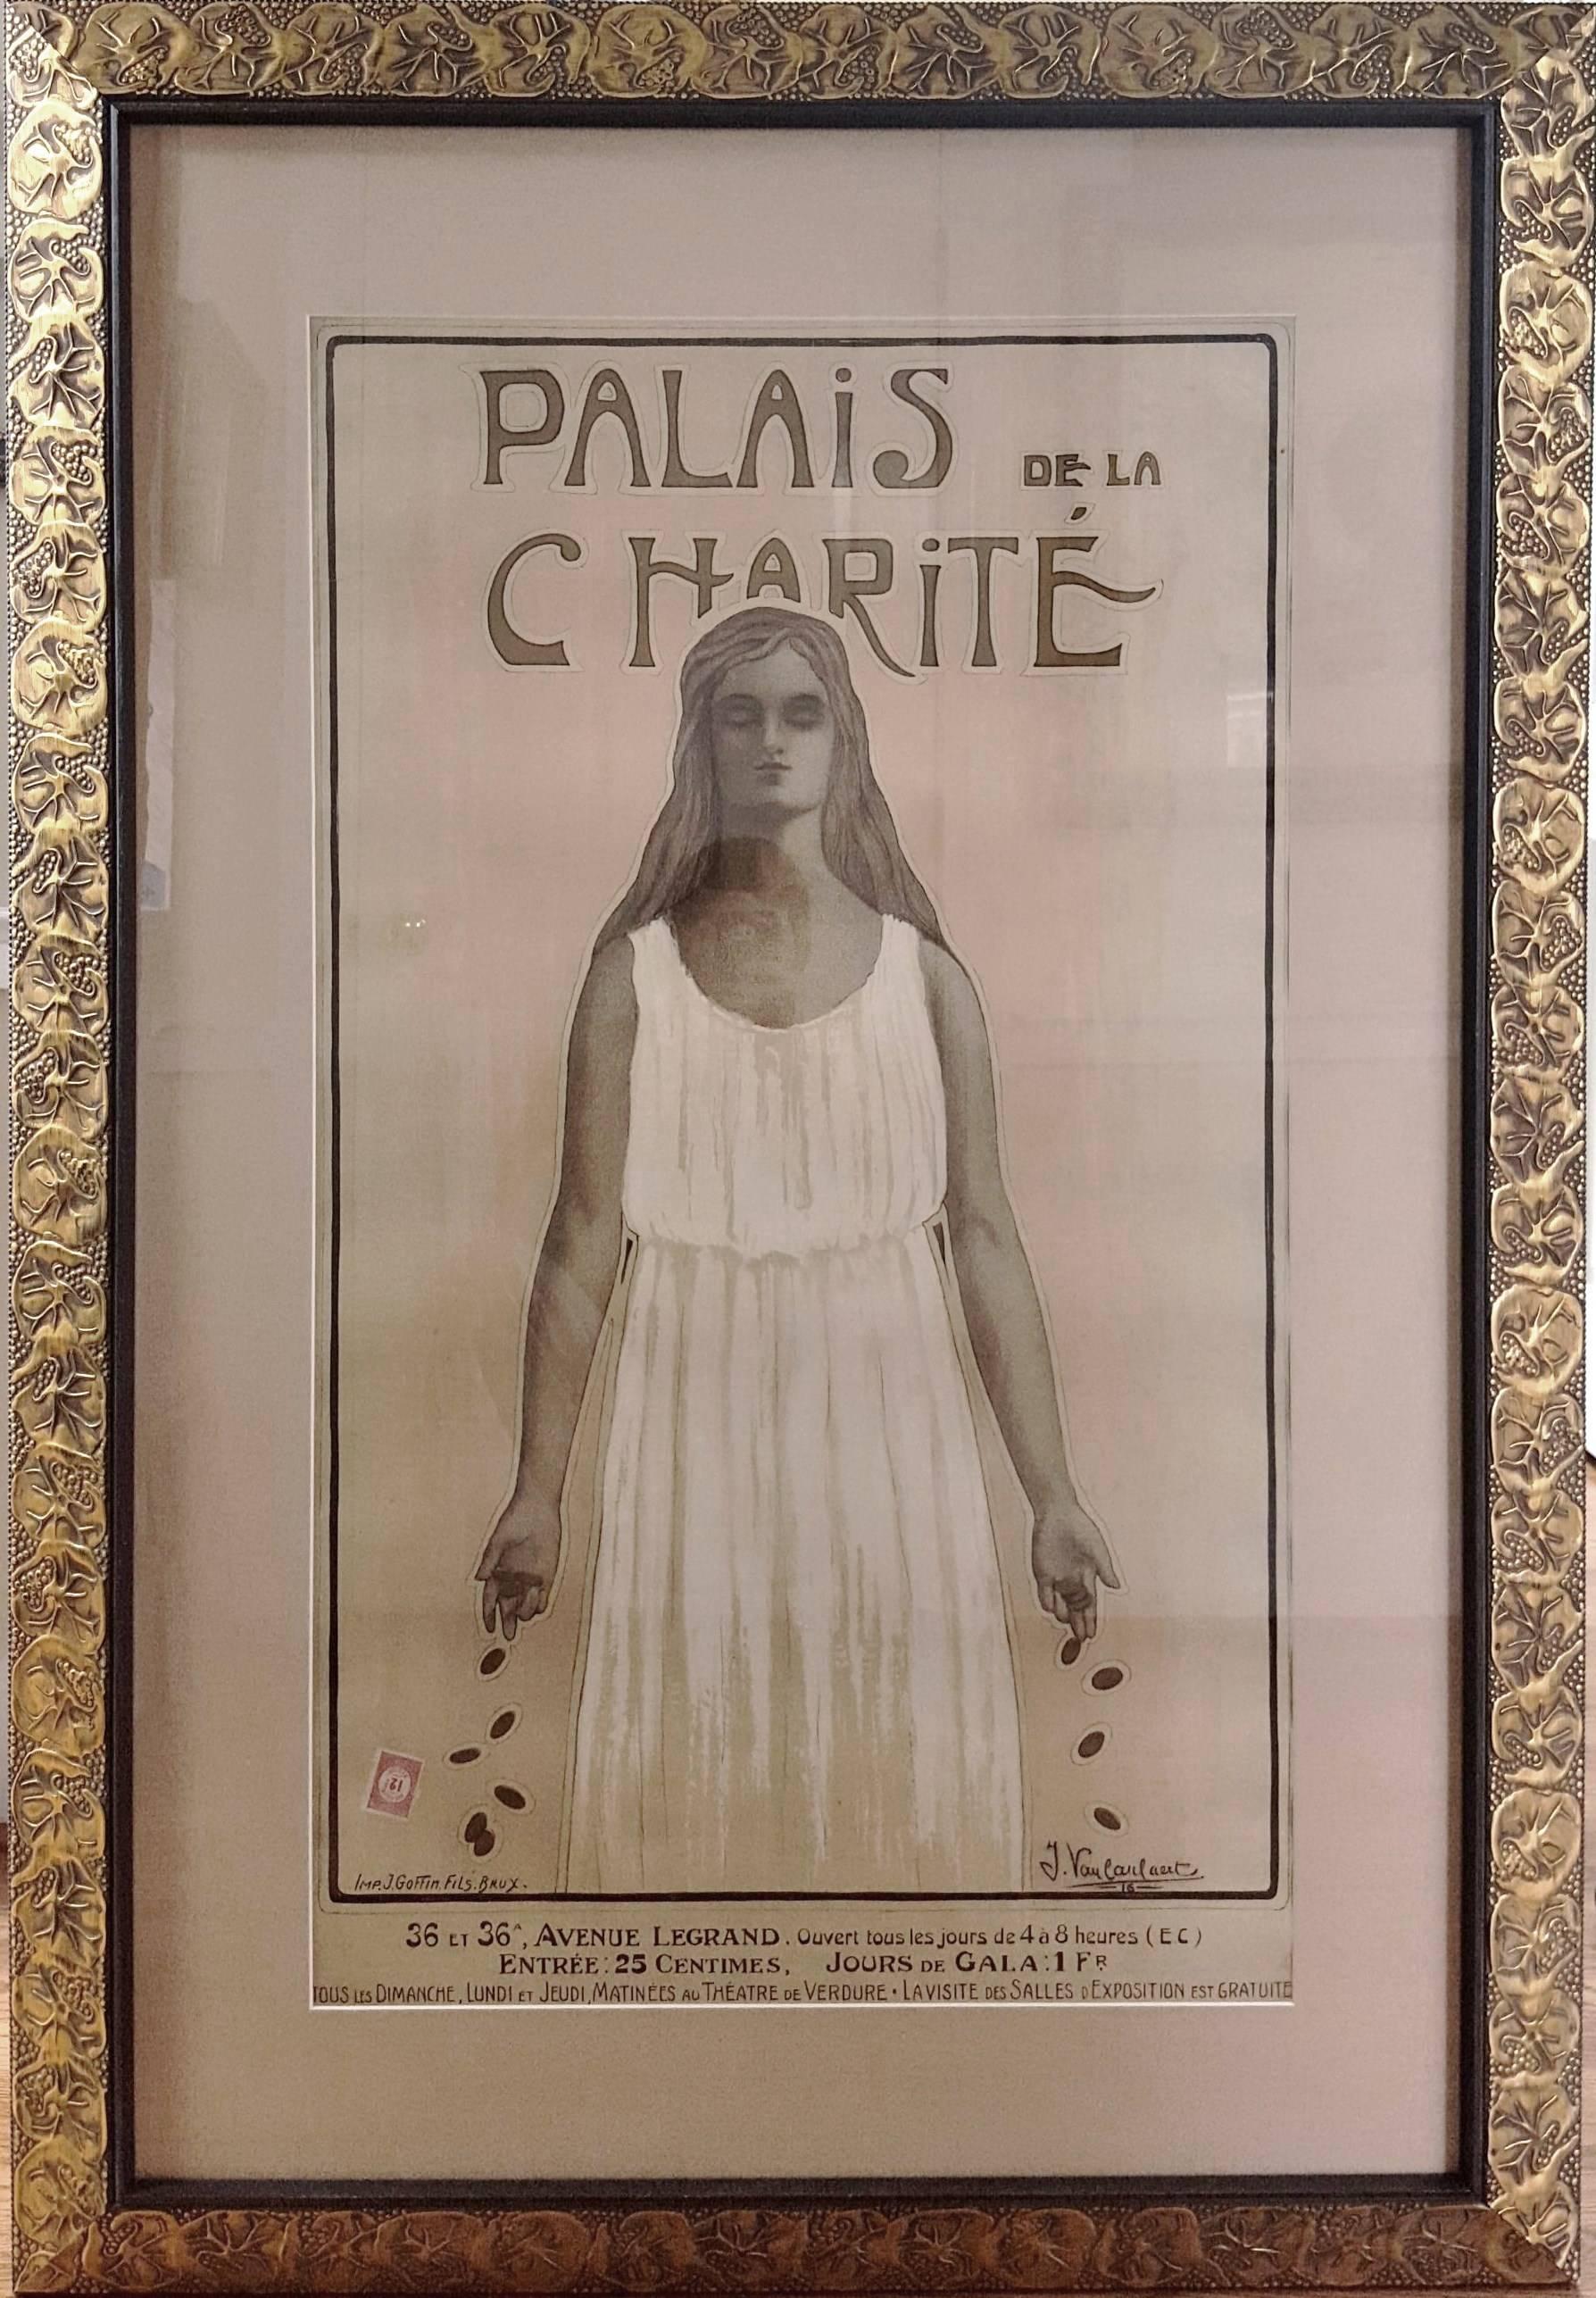 Palais de la Charite - Print by Jean Dominique van Caulaert